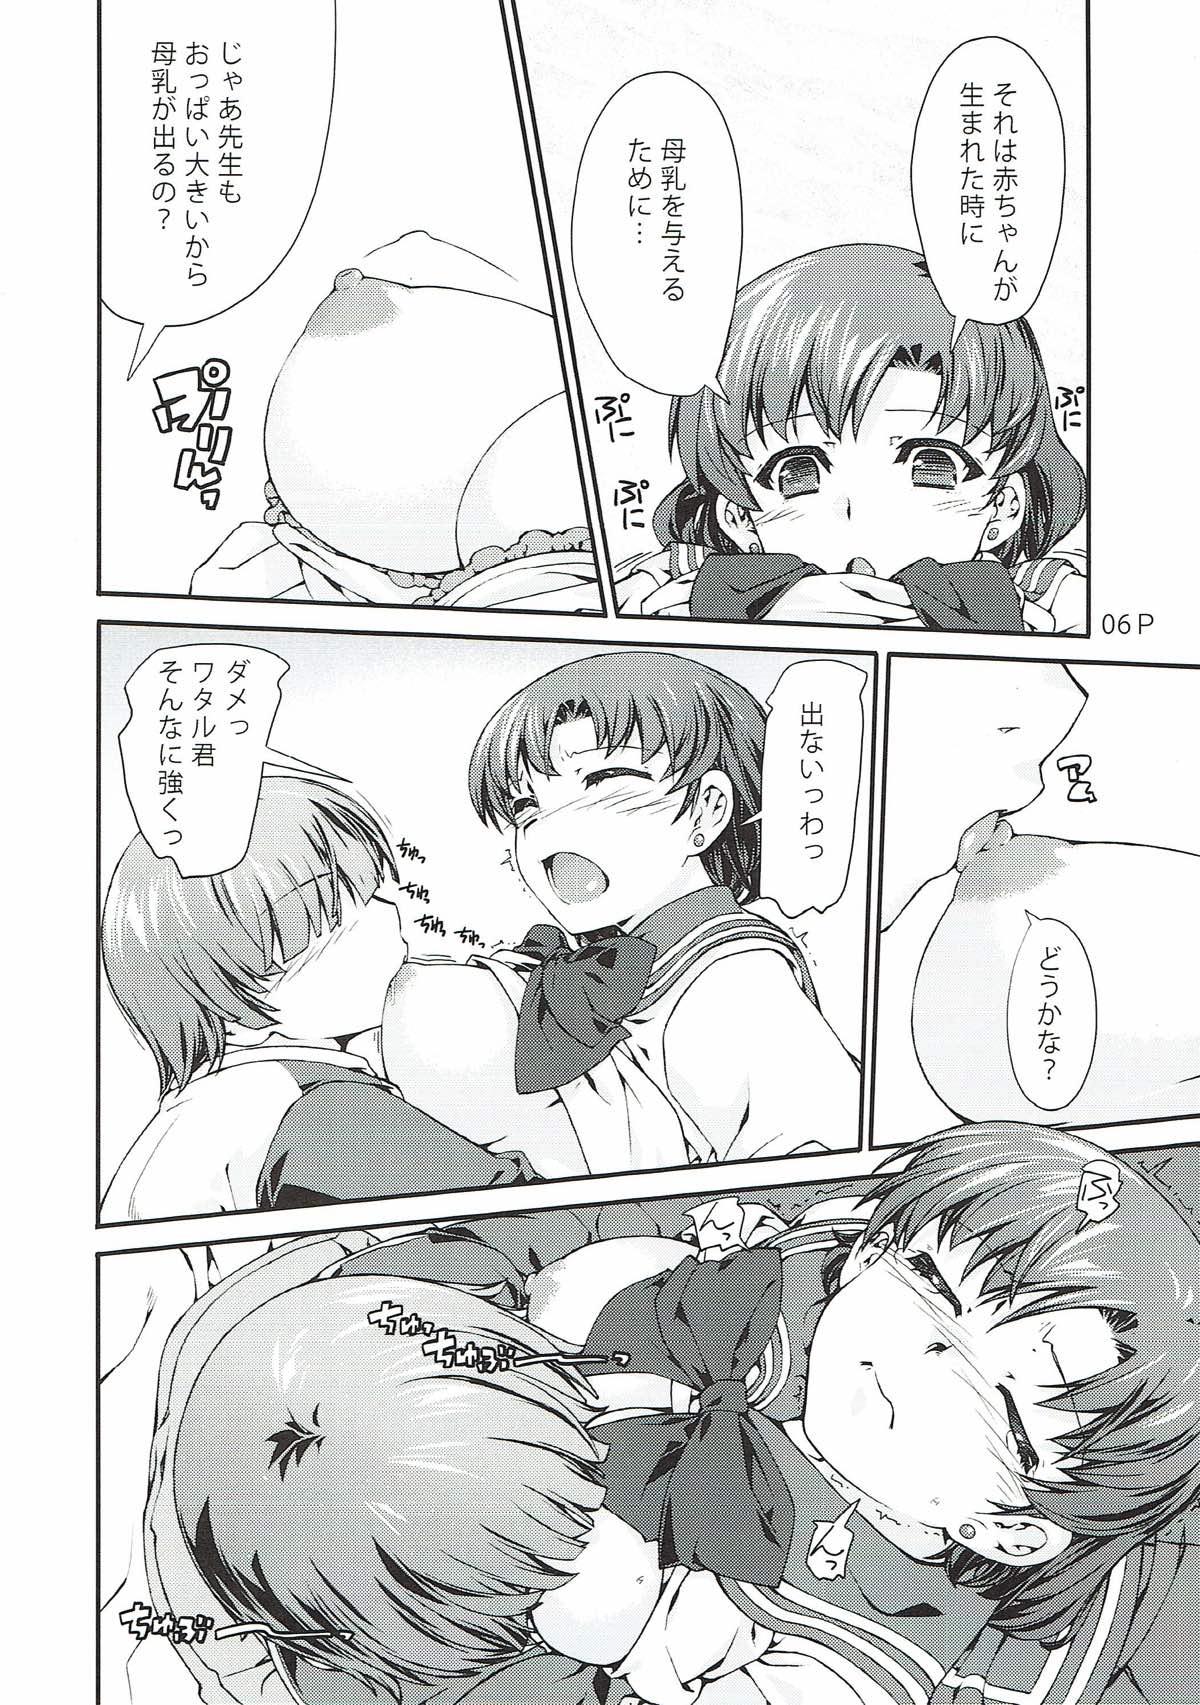 Nurumassage Suika - Sailor moon Sexy Whores - Page 6